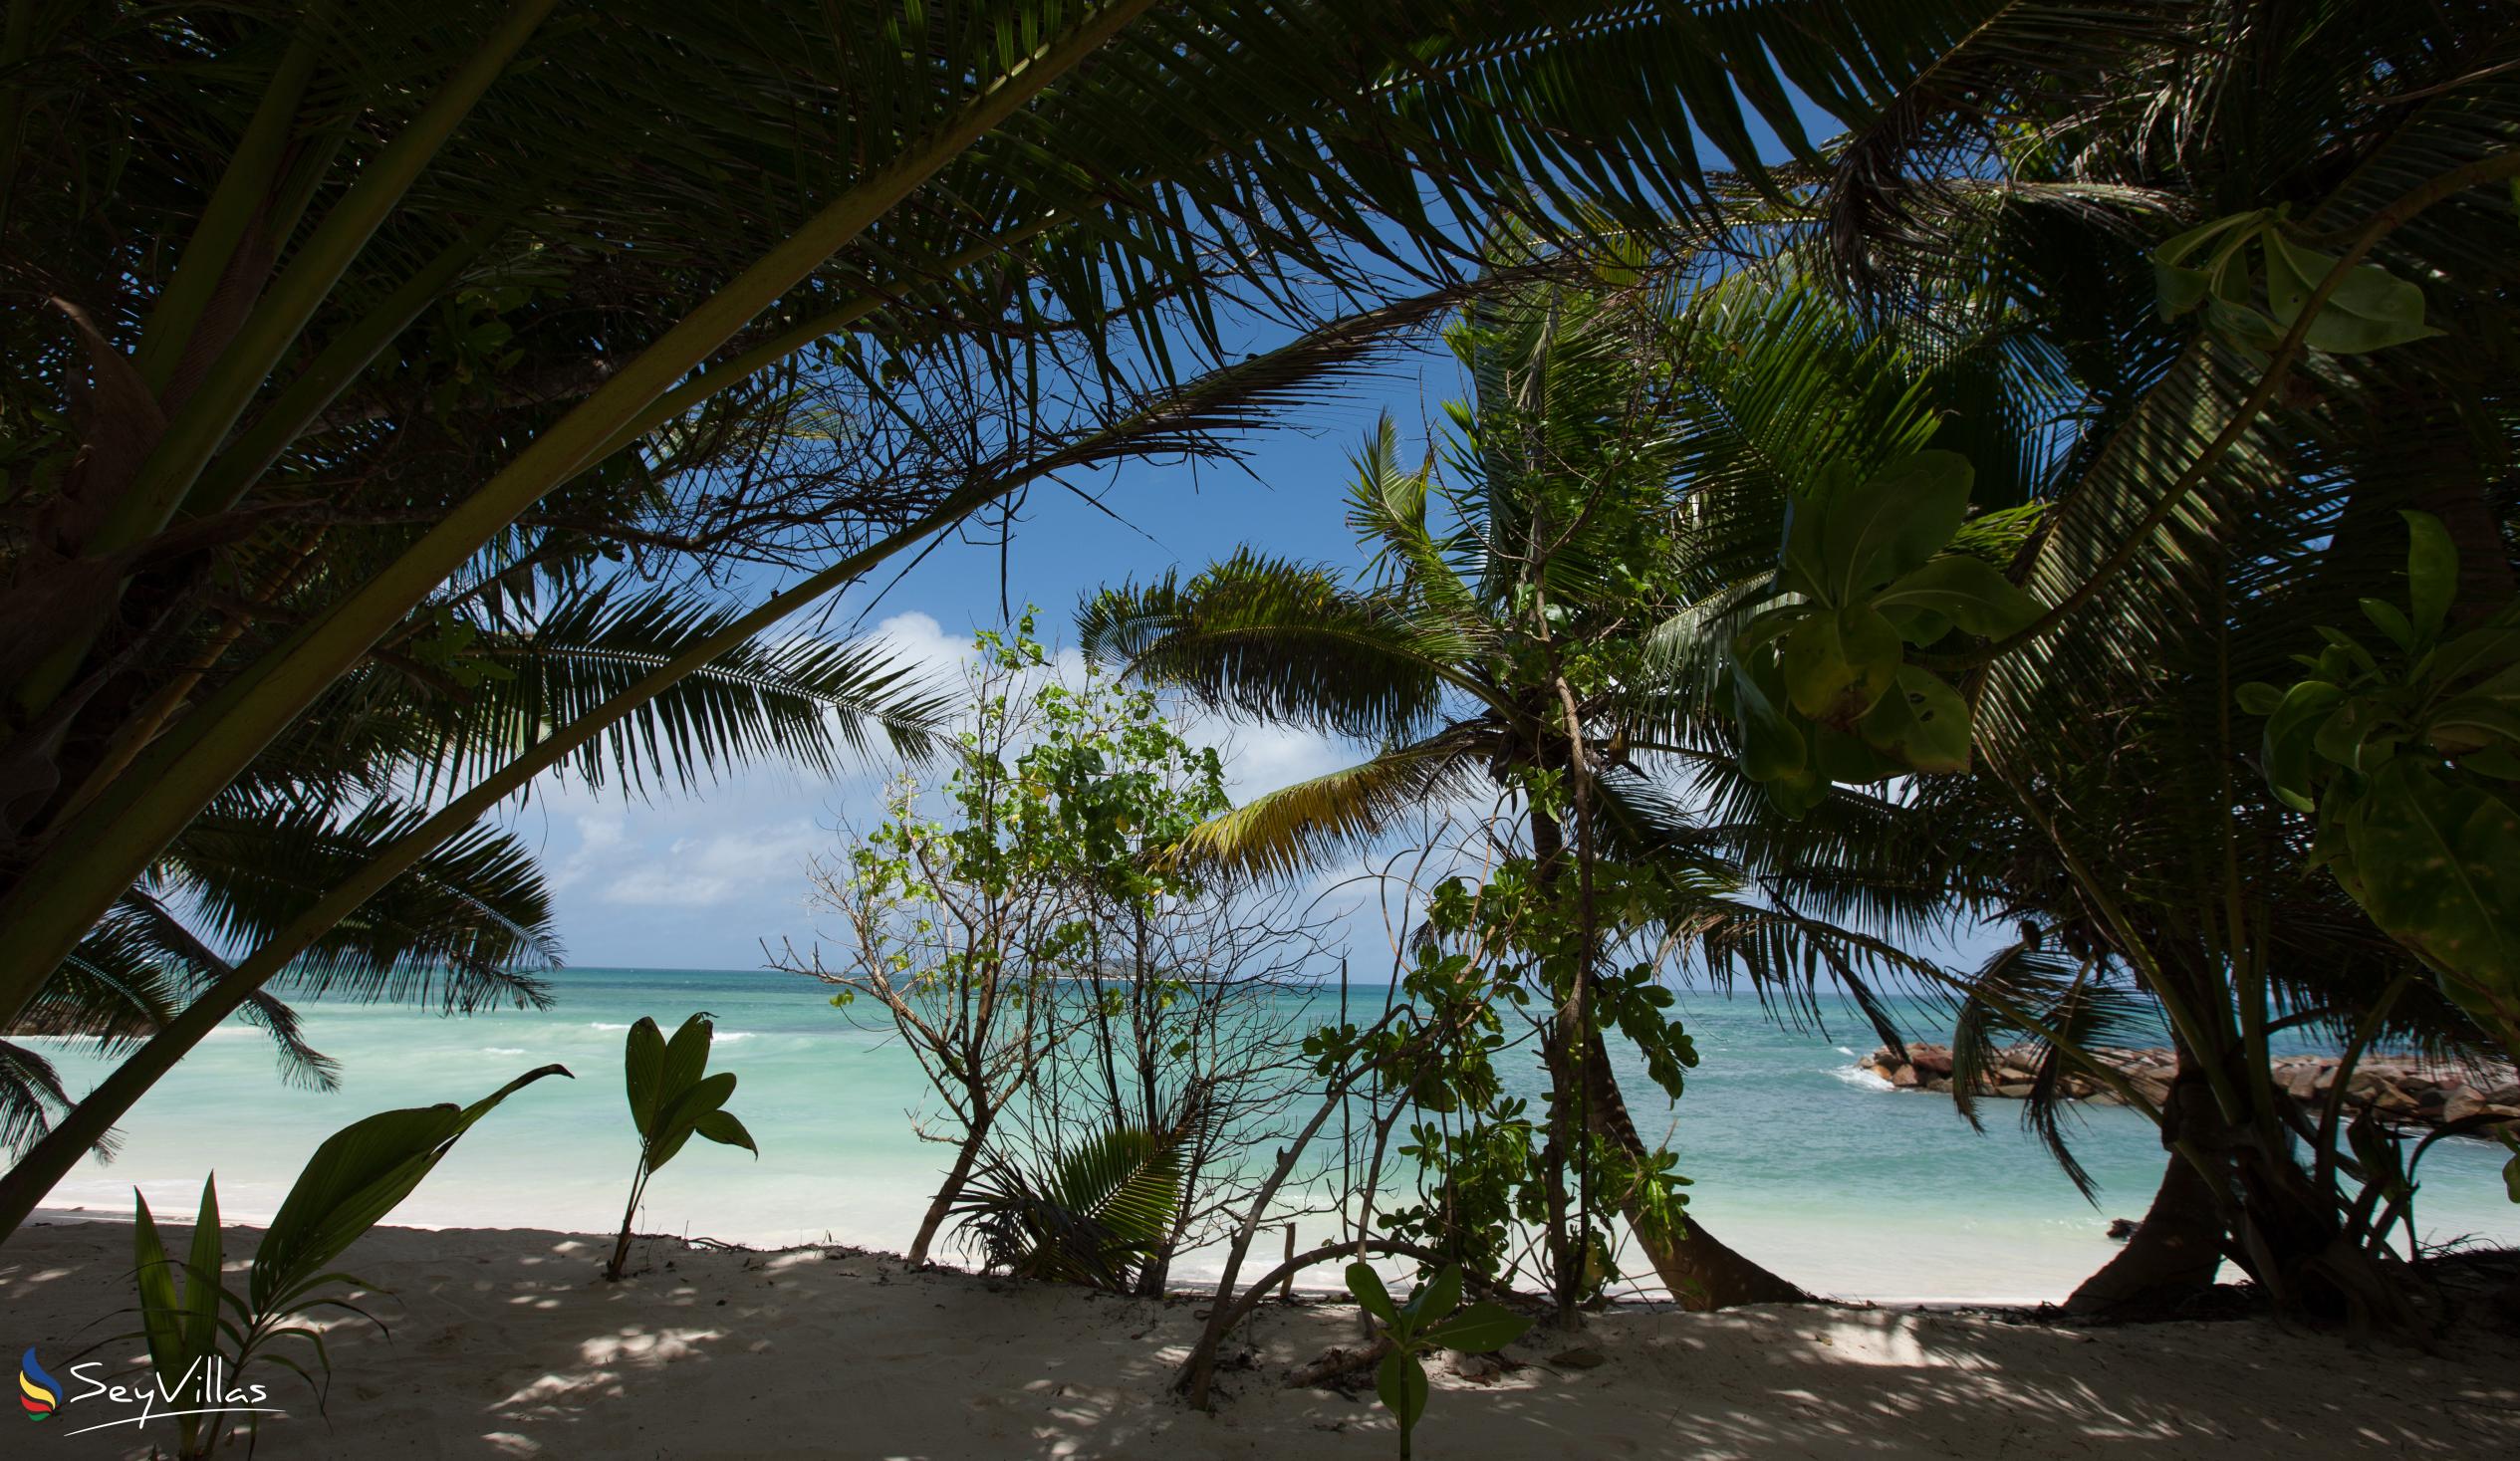 Foto 37: Villa Admiral - Posizione - Praslin (Seychelles)